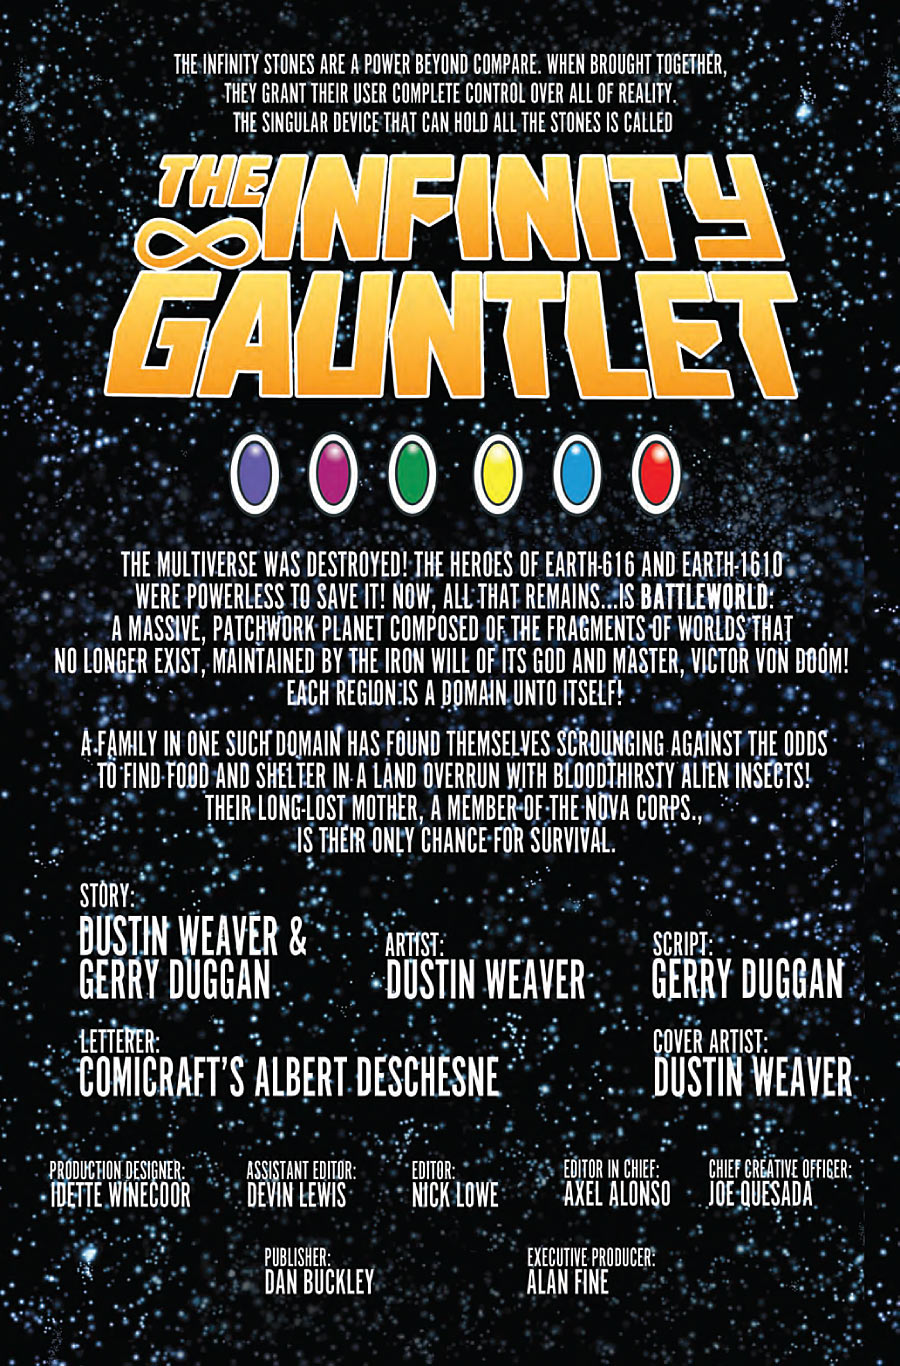 The Infinity Gauntlet #2